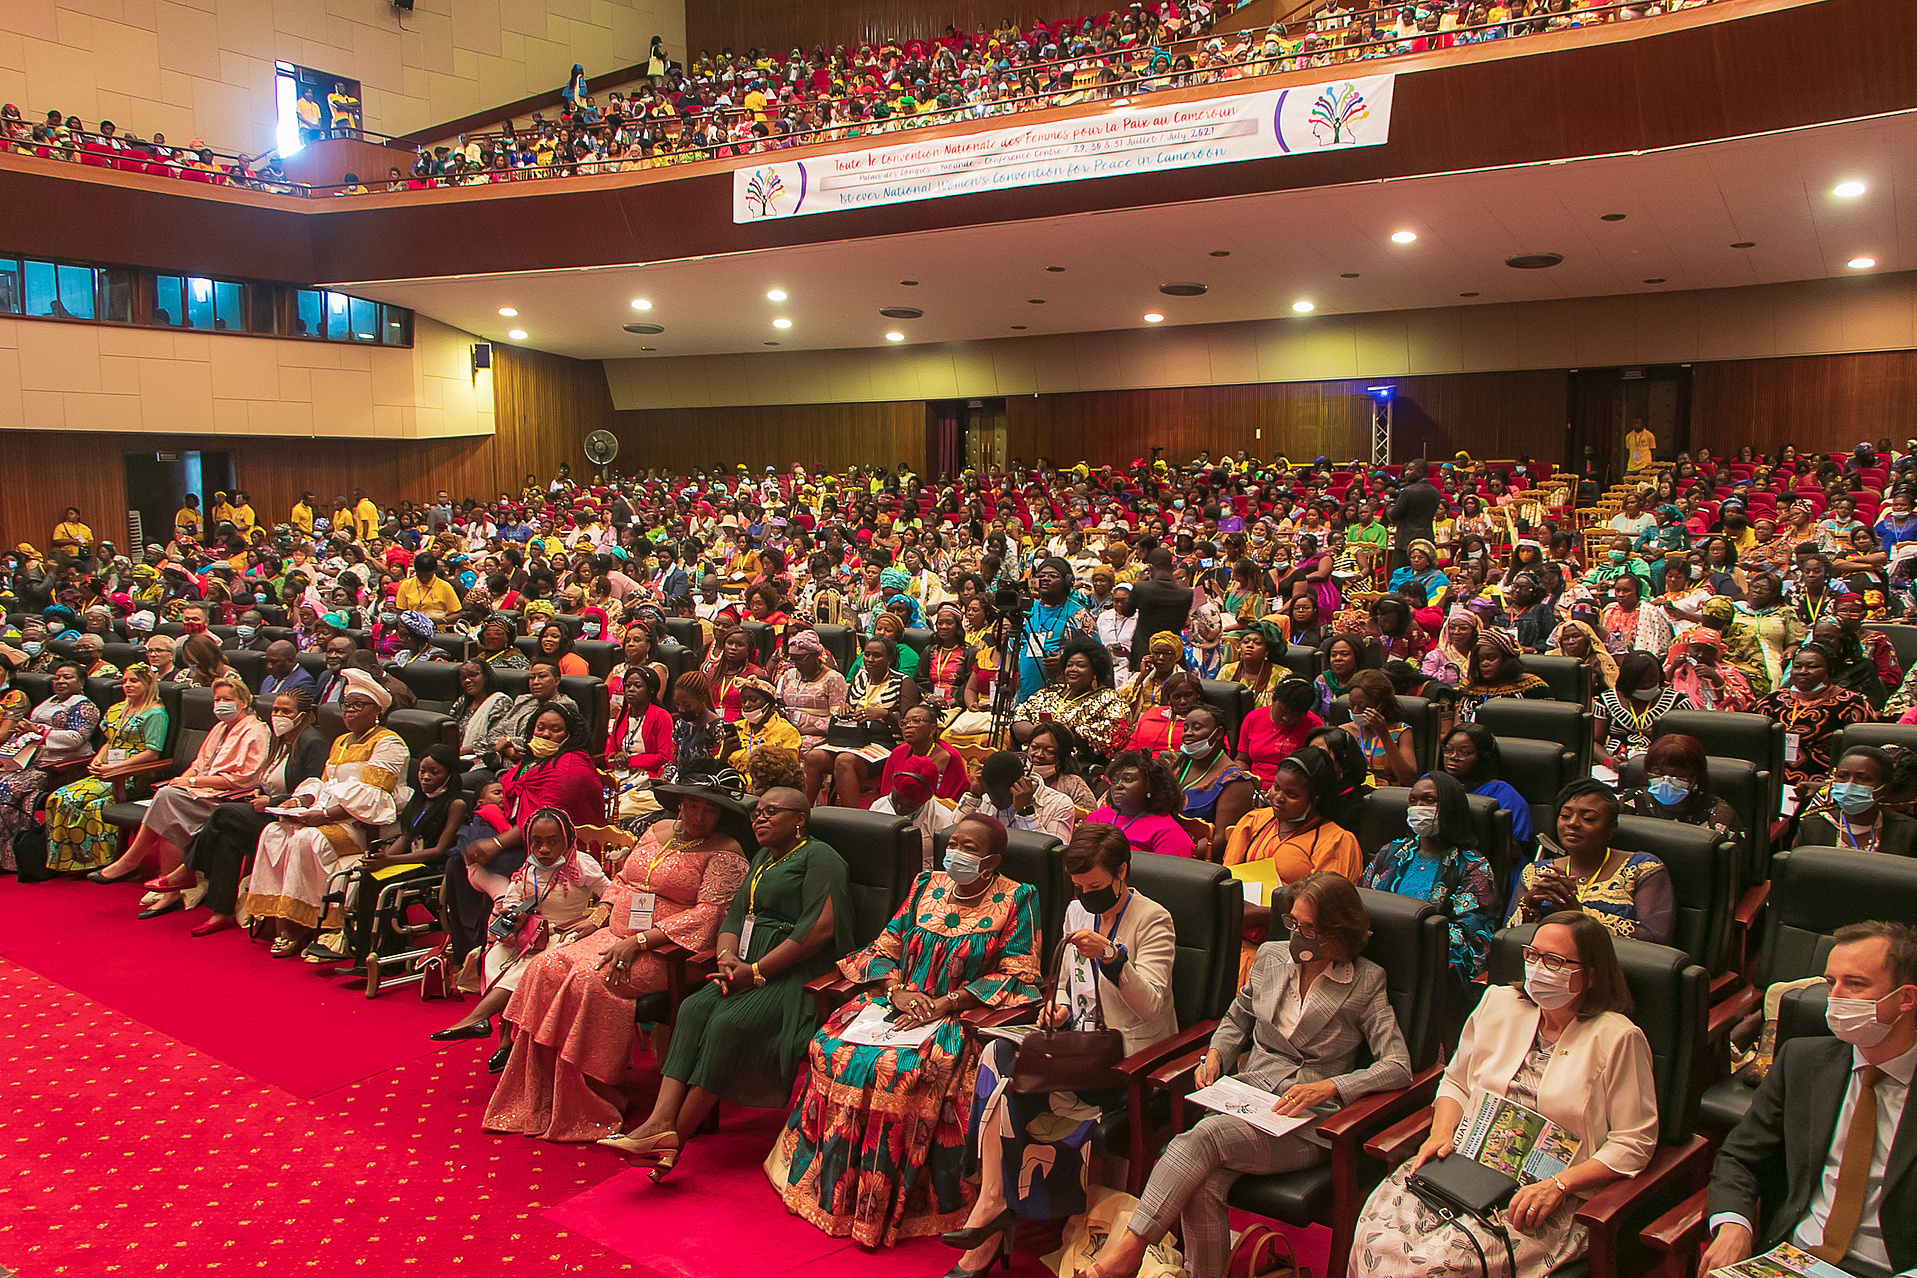 Publikum der Frauenfriedenskonferenz in Kamerun. Größtenteils Frauen im Publikum